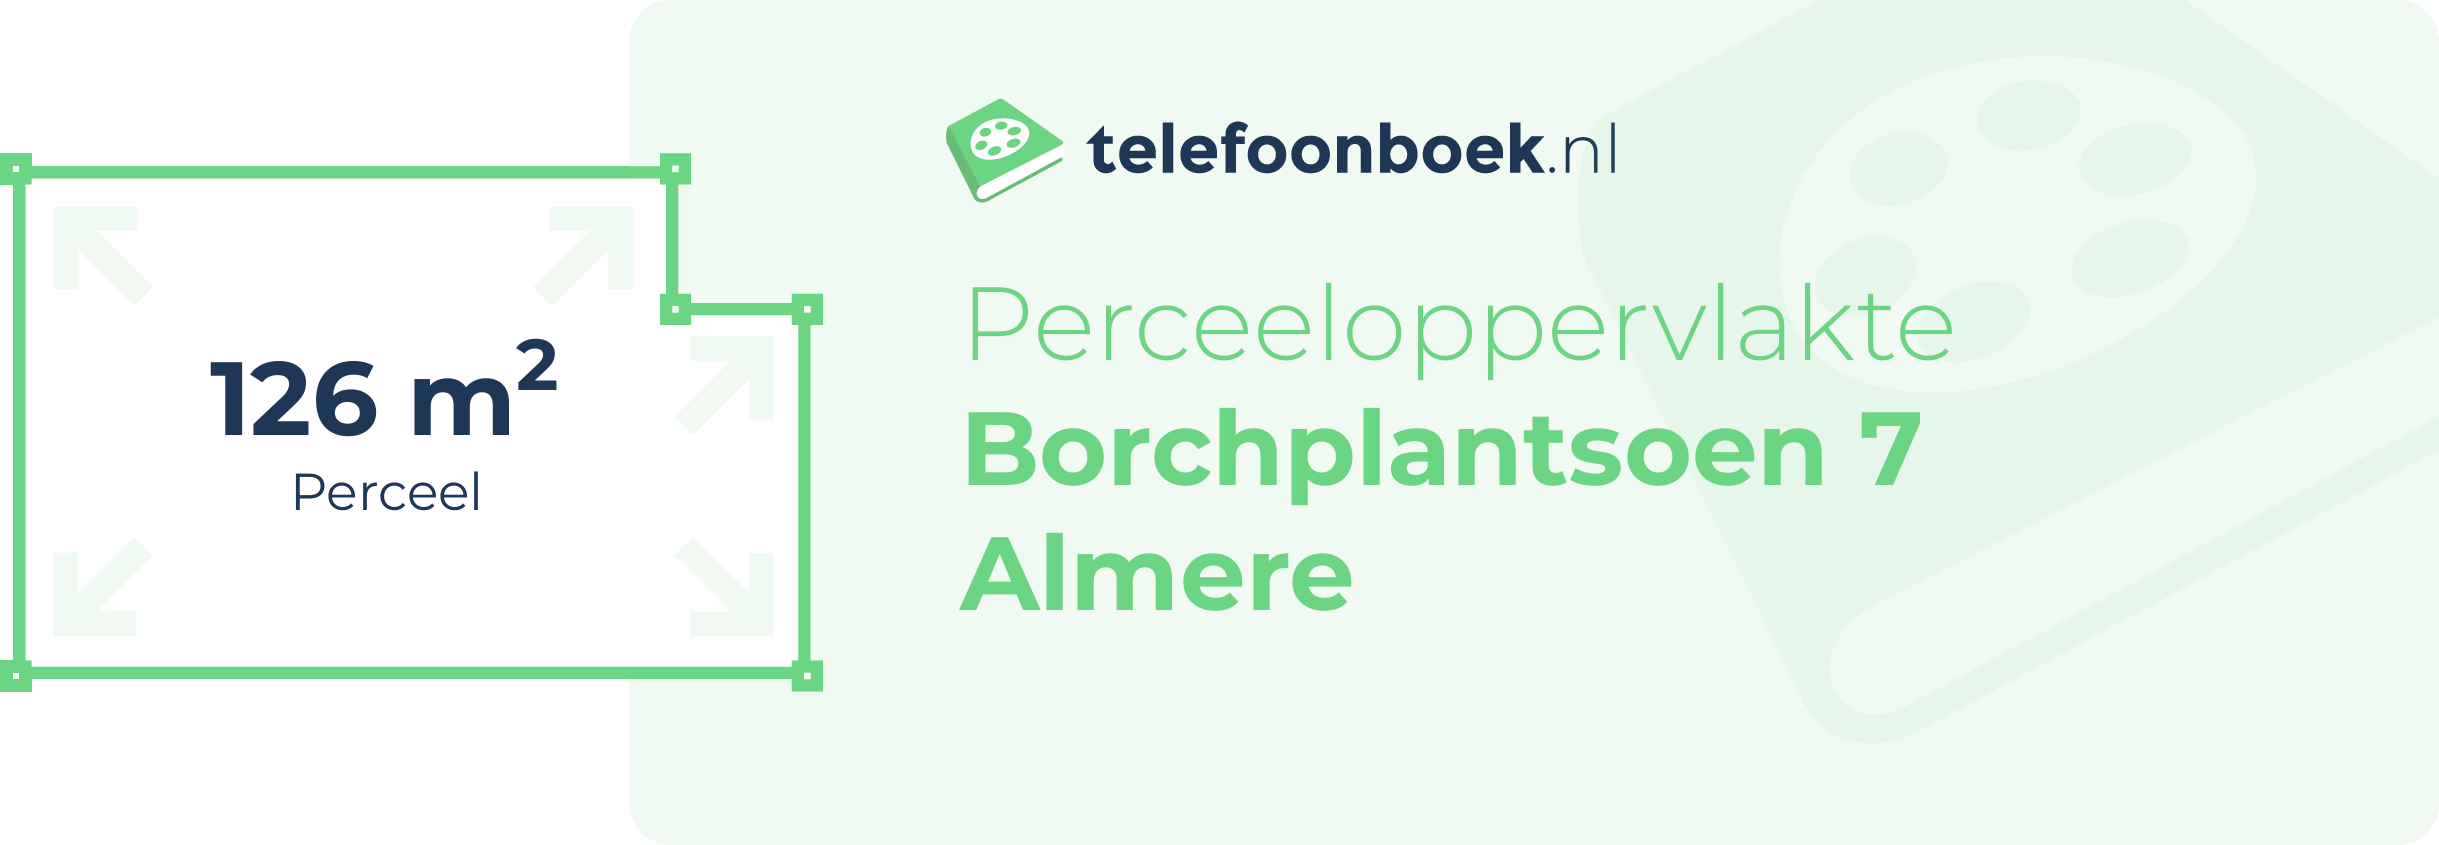 Perceeloppervlakte Borchplantsoen 7 Almere